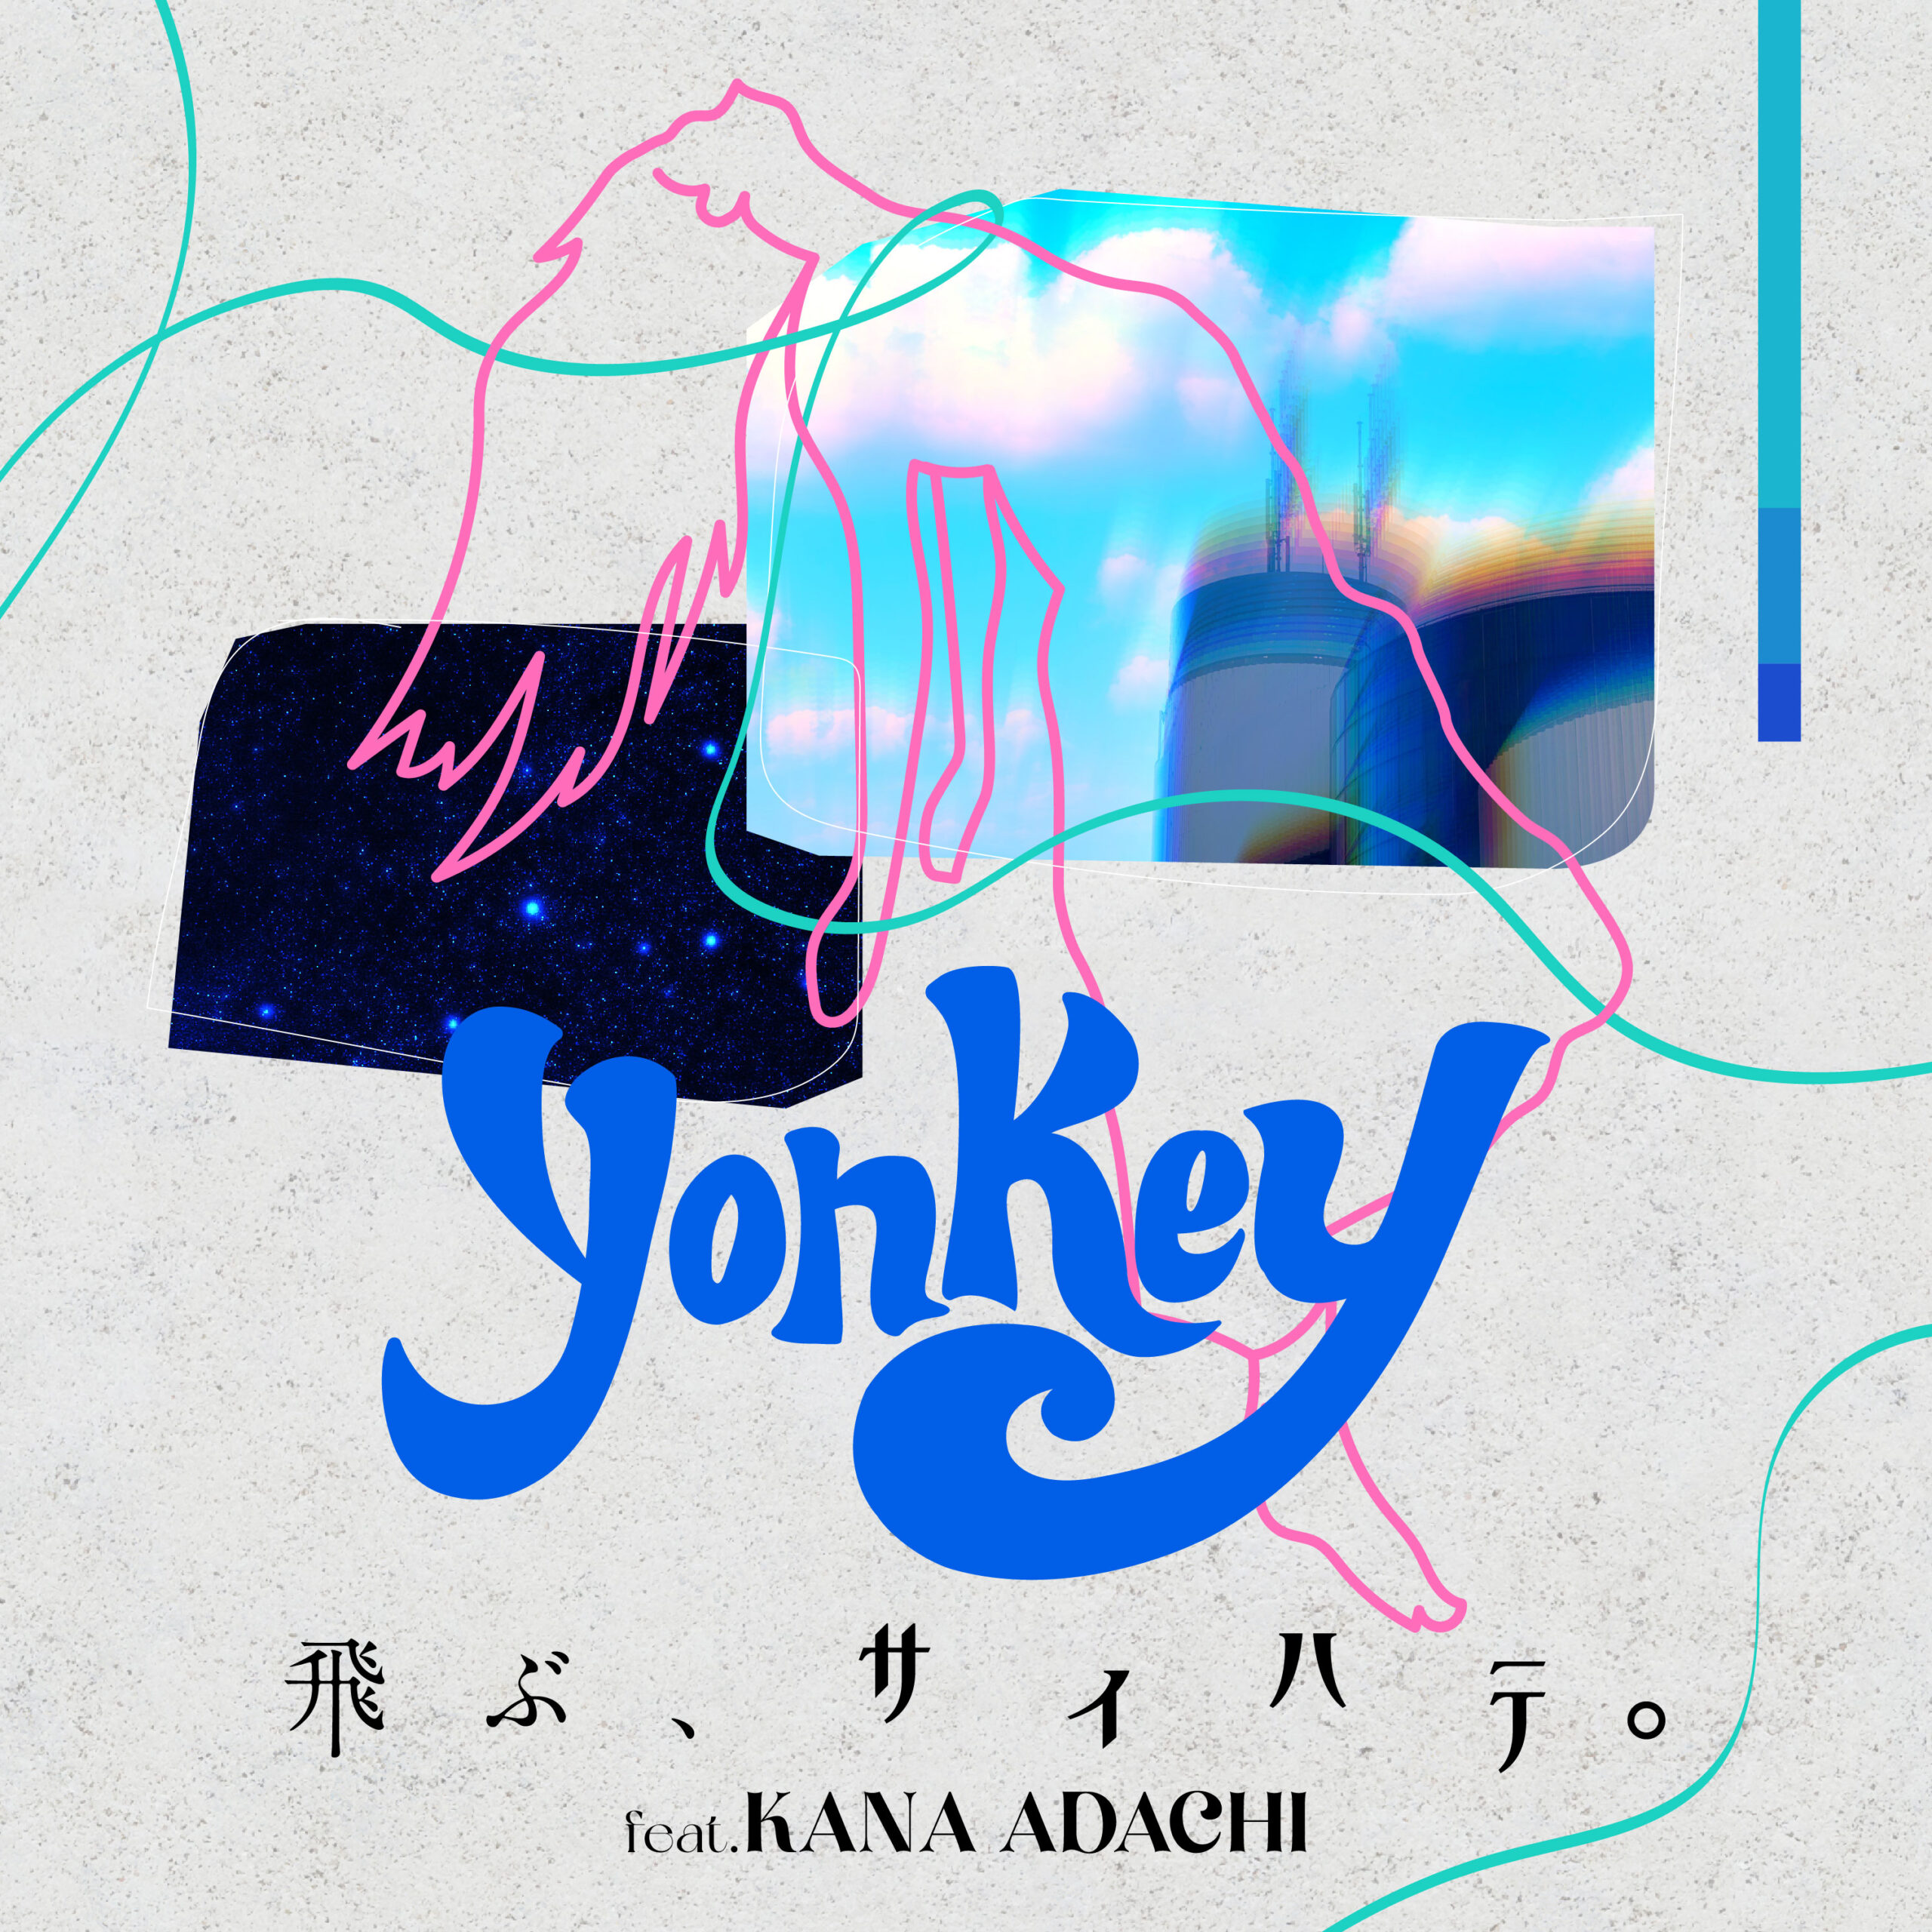 yonkey「飛ぶ、サイハテ。(feat. 足立佳奈)」